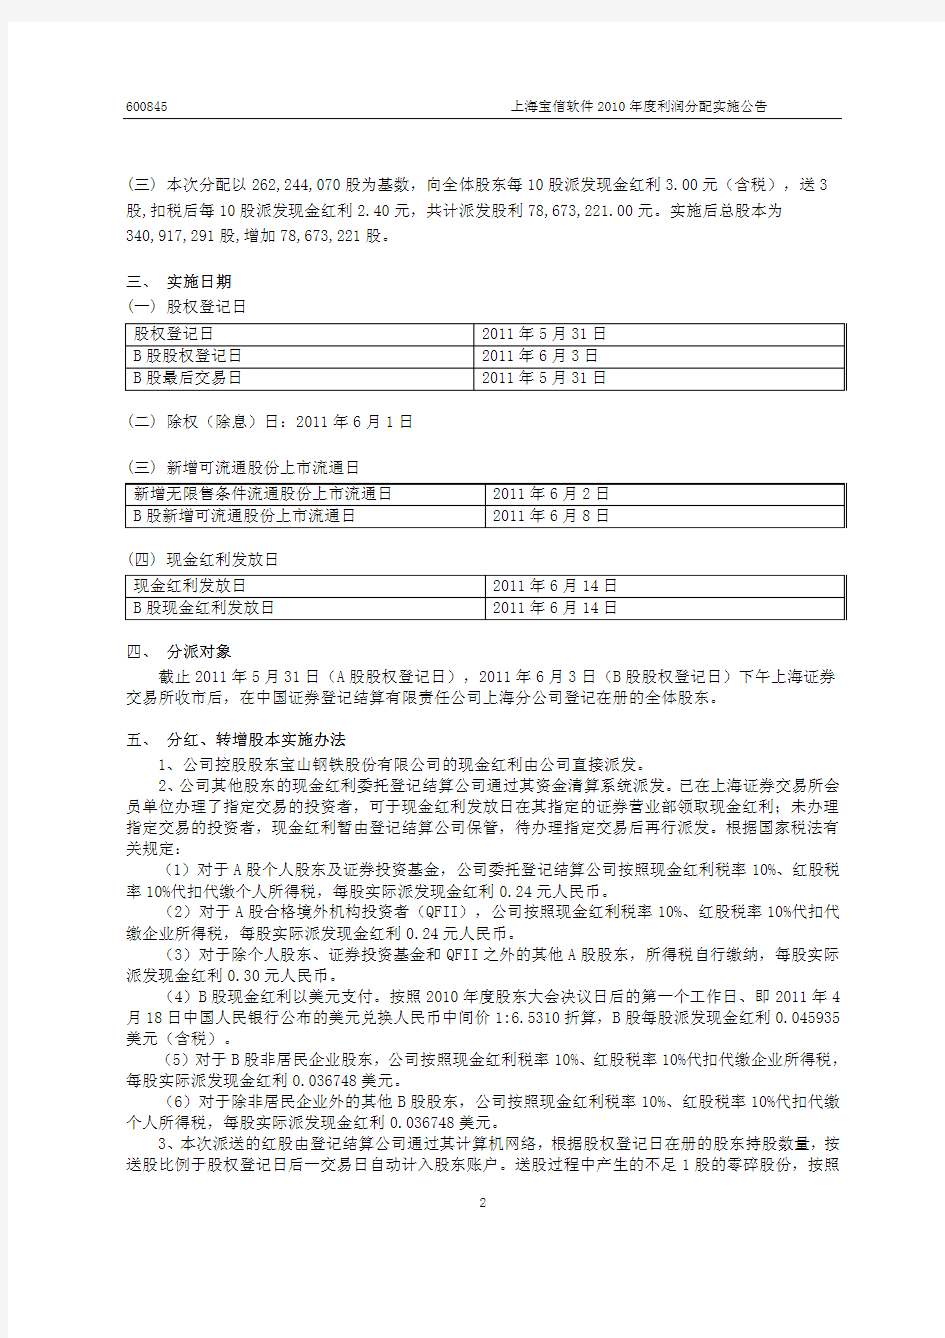 上海宝信软件股份有限公司 上海宝信软件股份有限公司